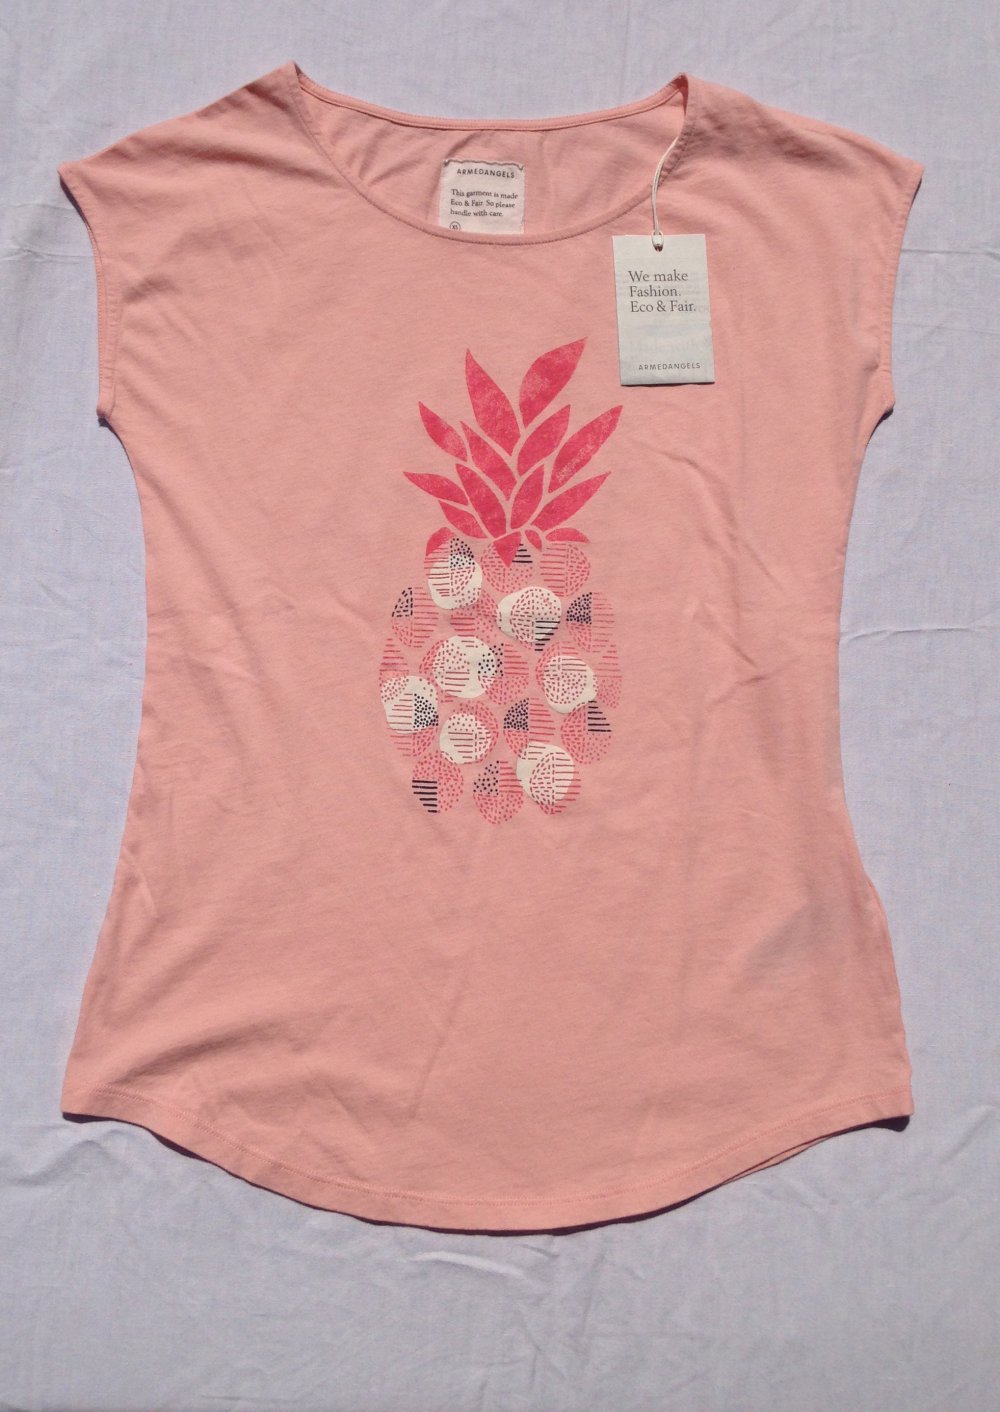 NEU T-Shirt rosa Ananas von armedangels